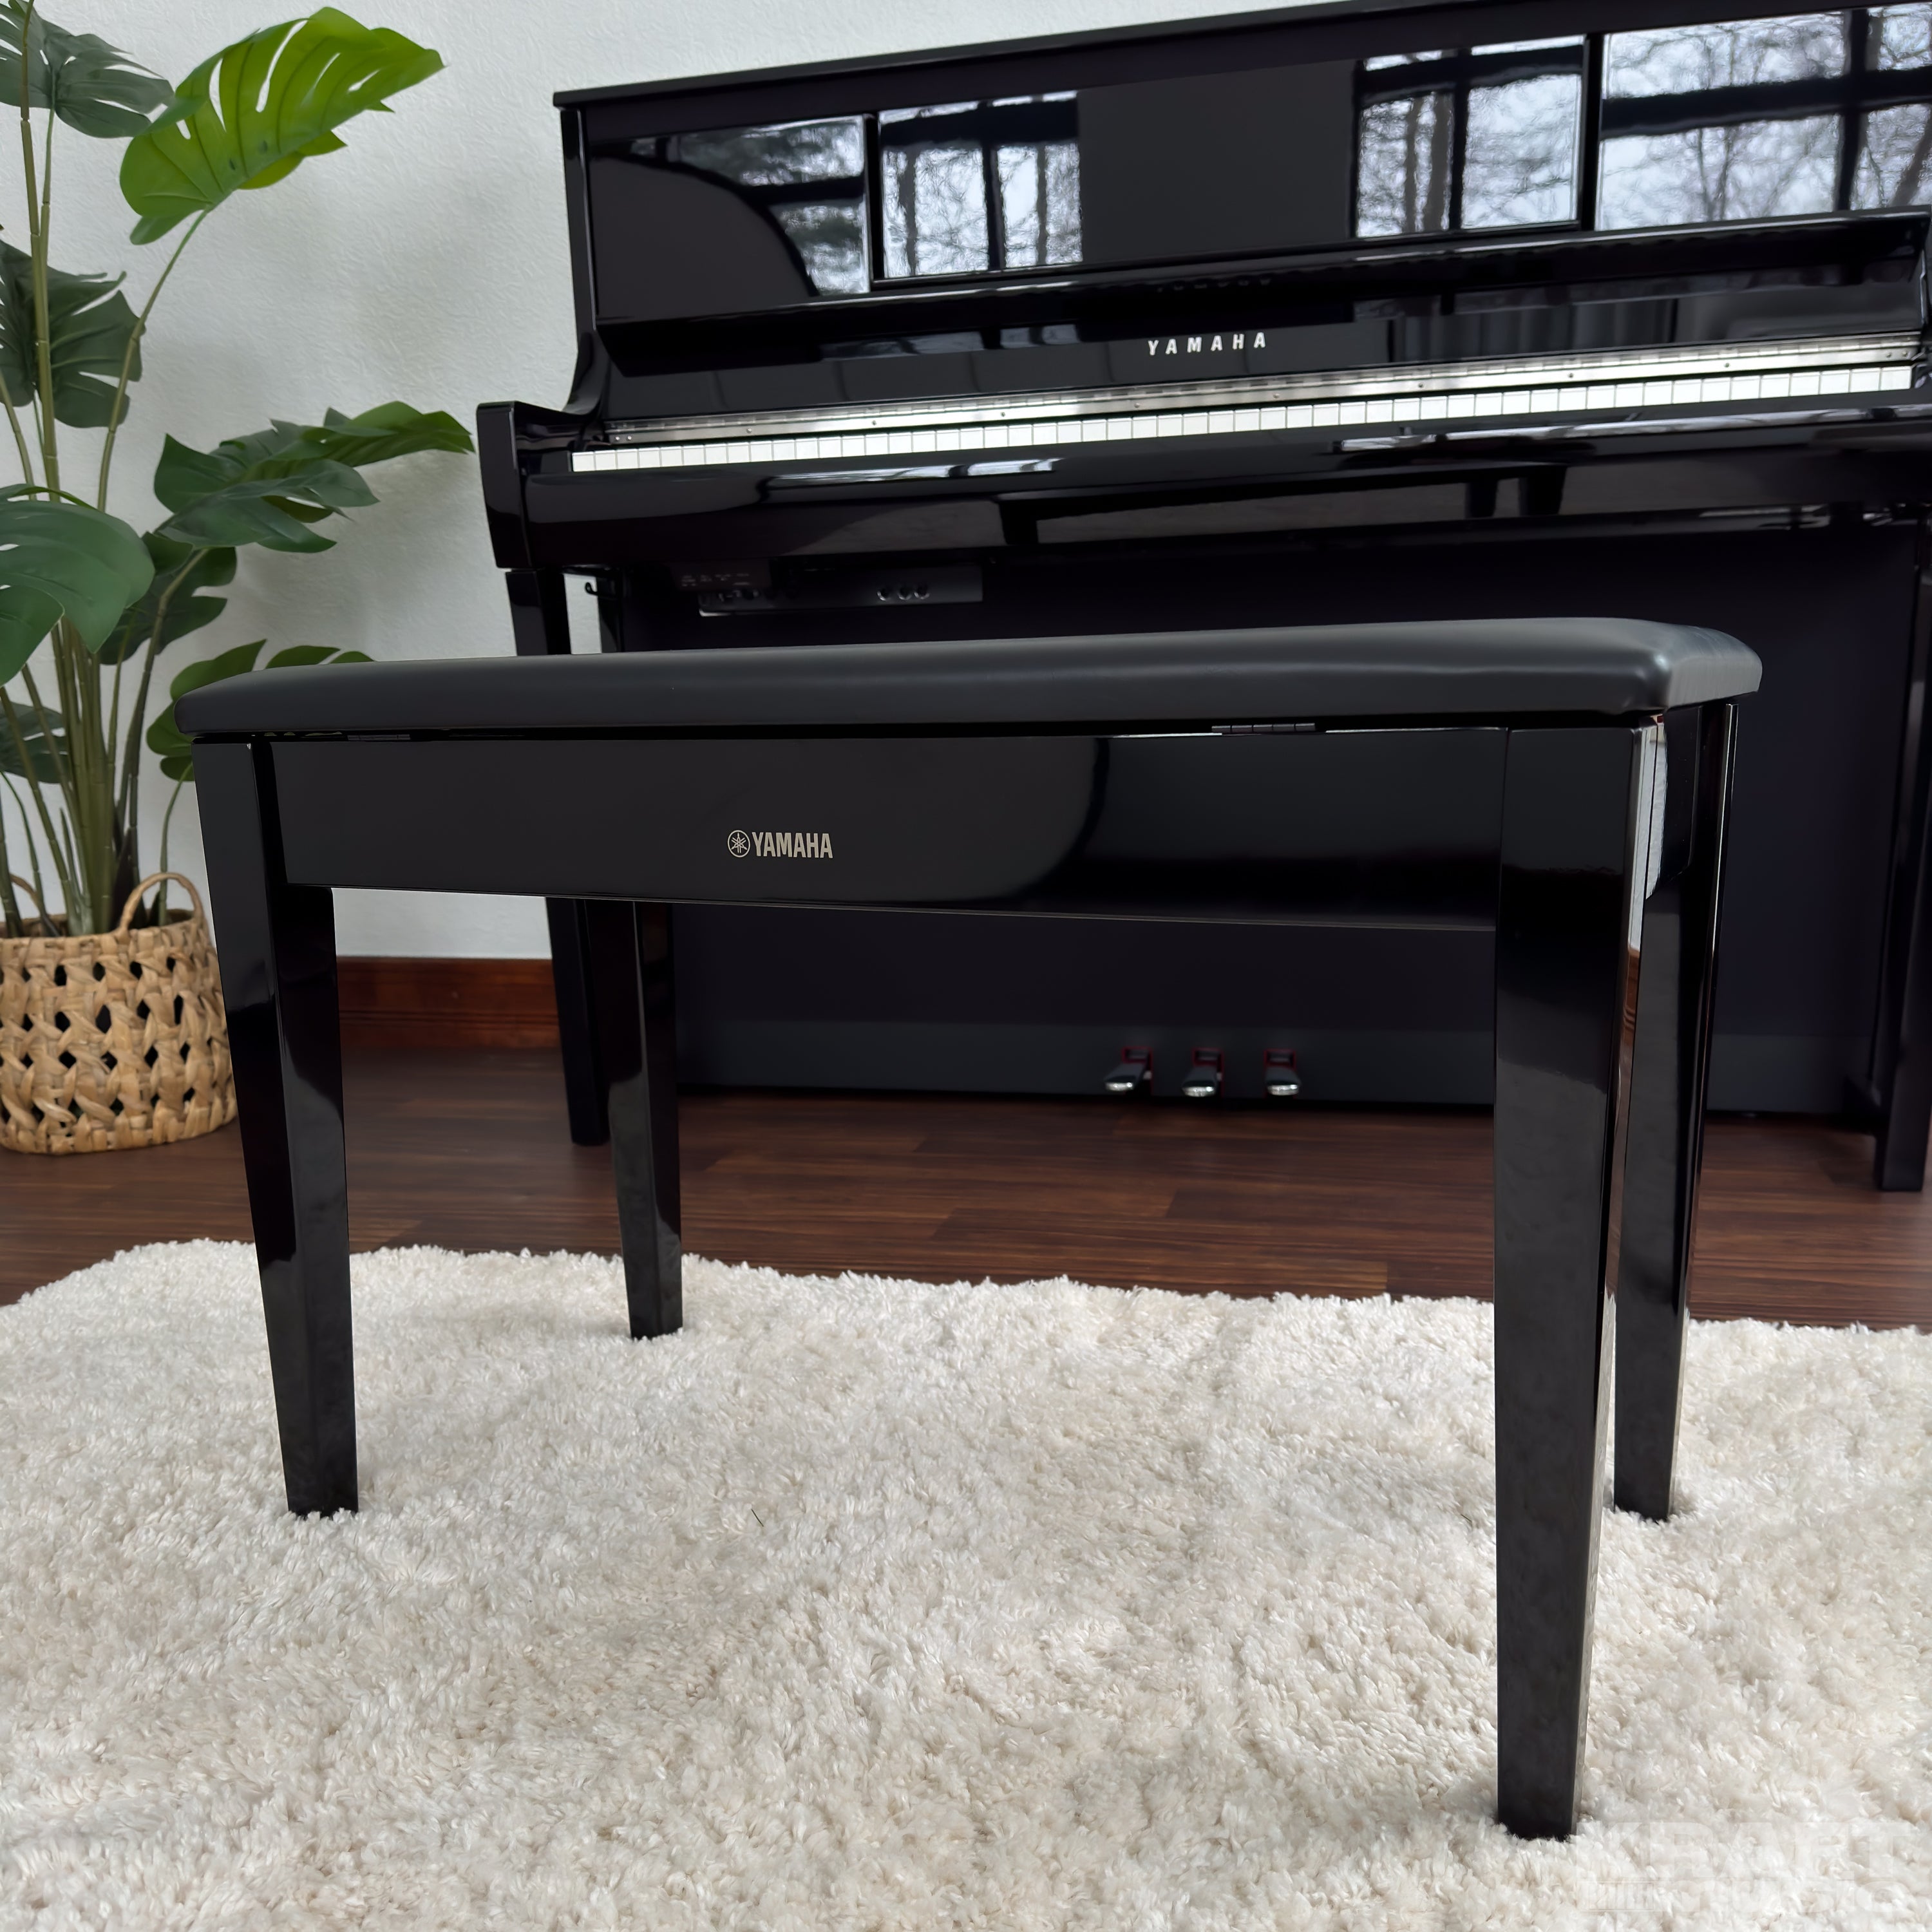 Yamaha Clavinova CSP-295 Digital Piano - Polished Ebony -  bench